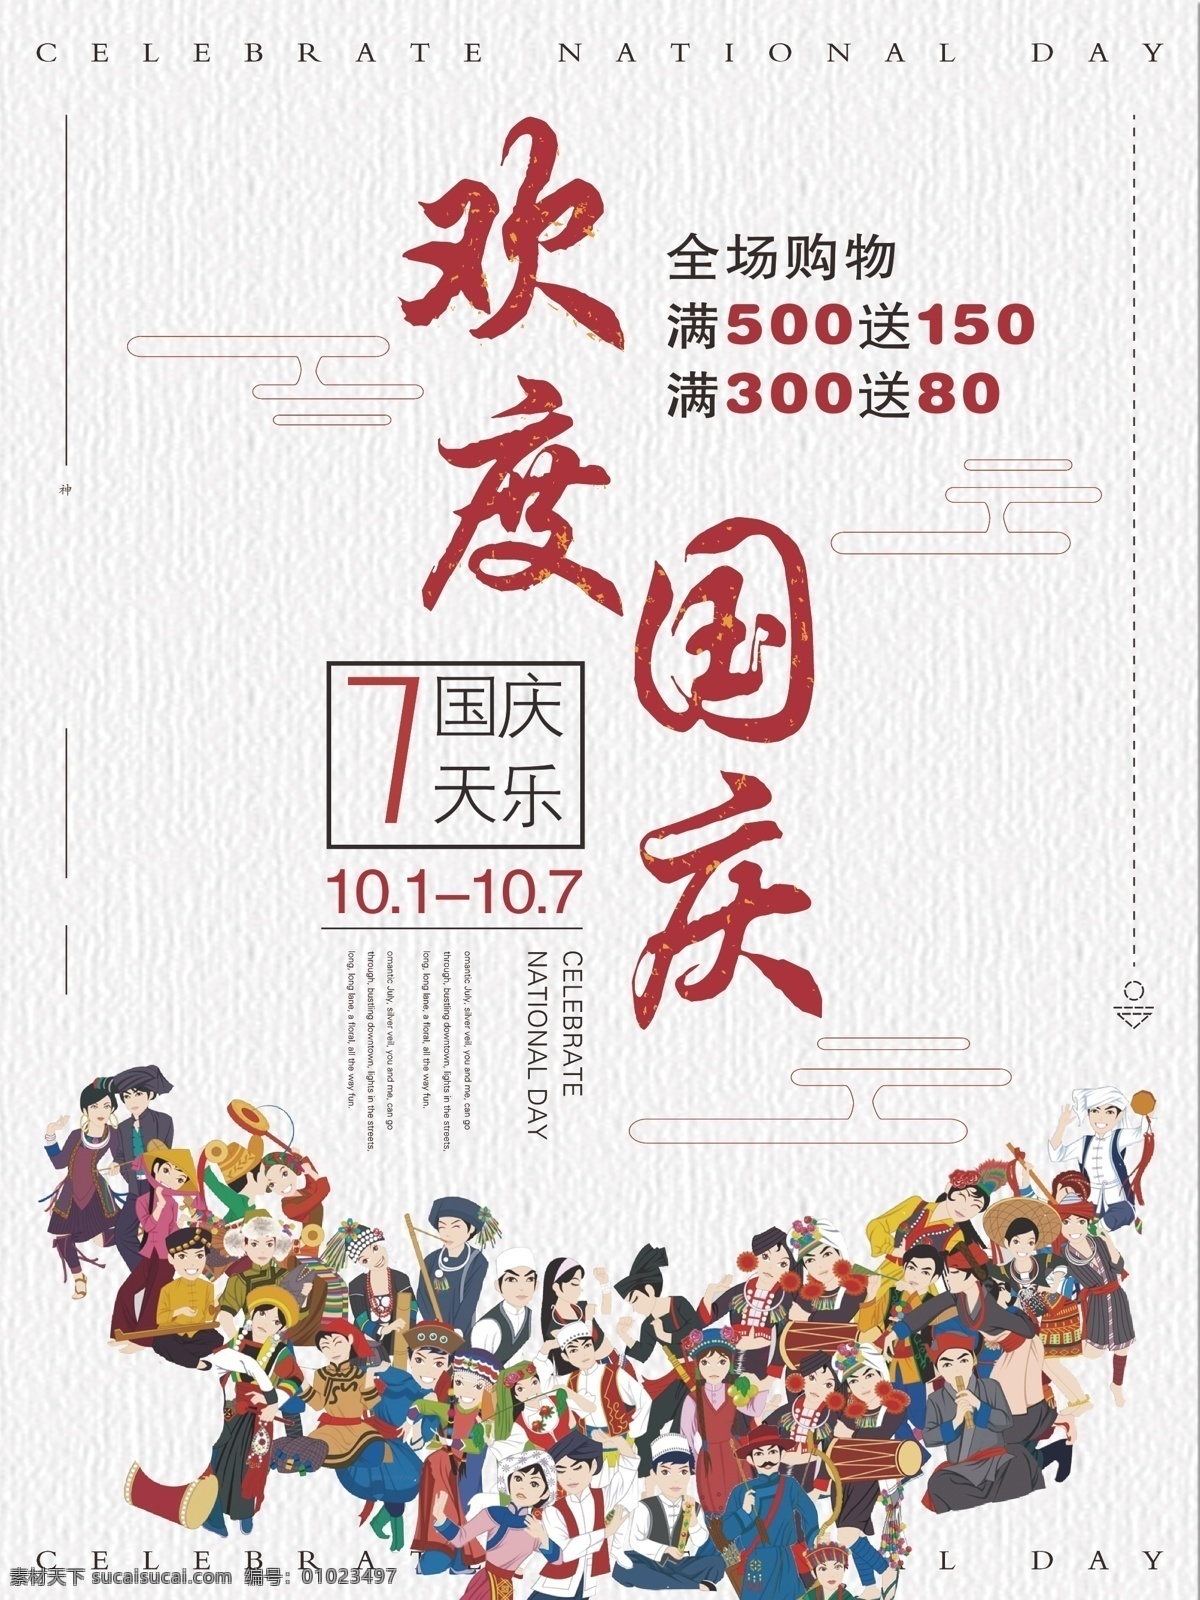 国庆 民族 同庆 海报 56个民族 简约 复古风 节日 促销